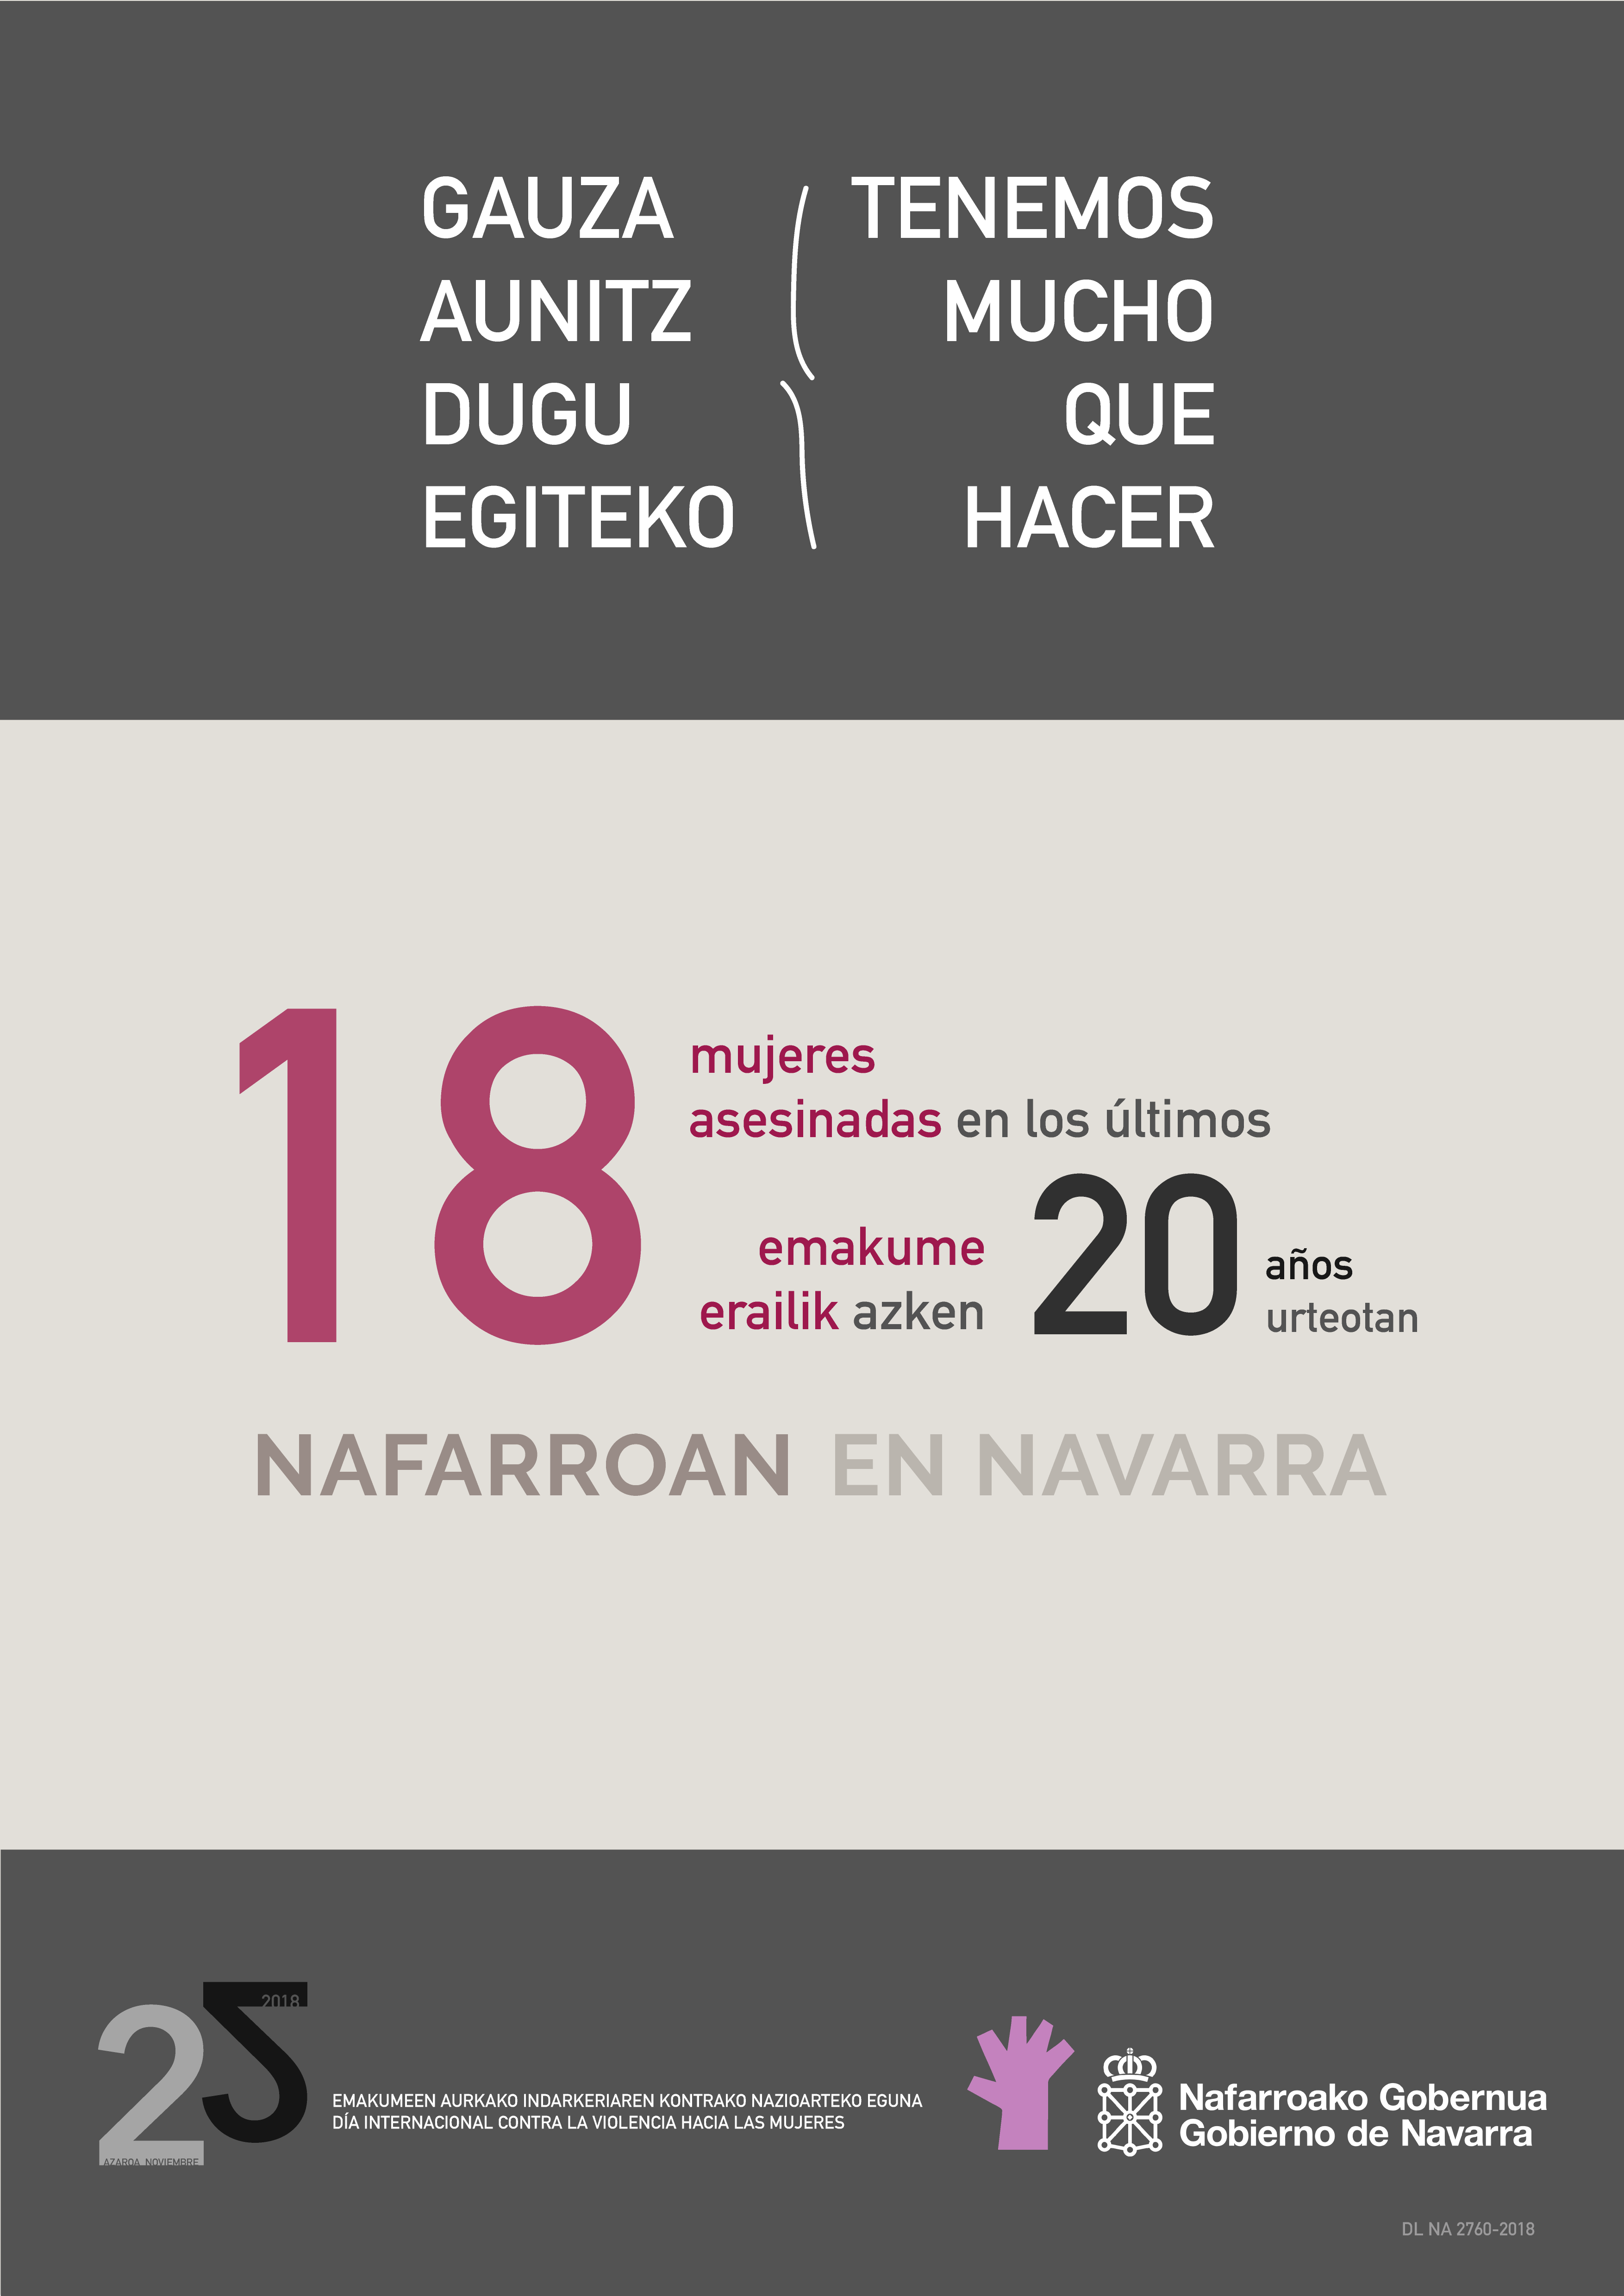 Cartel oficial de la campaña de Gobierno de Navarra por el Día Internacional contra la violencia hacia las mujeres